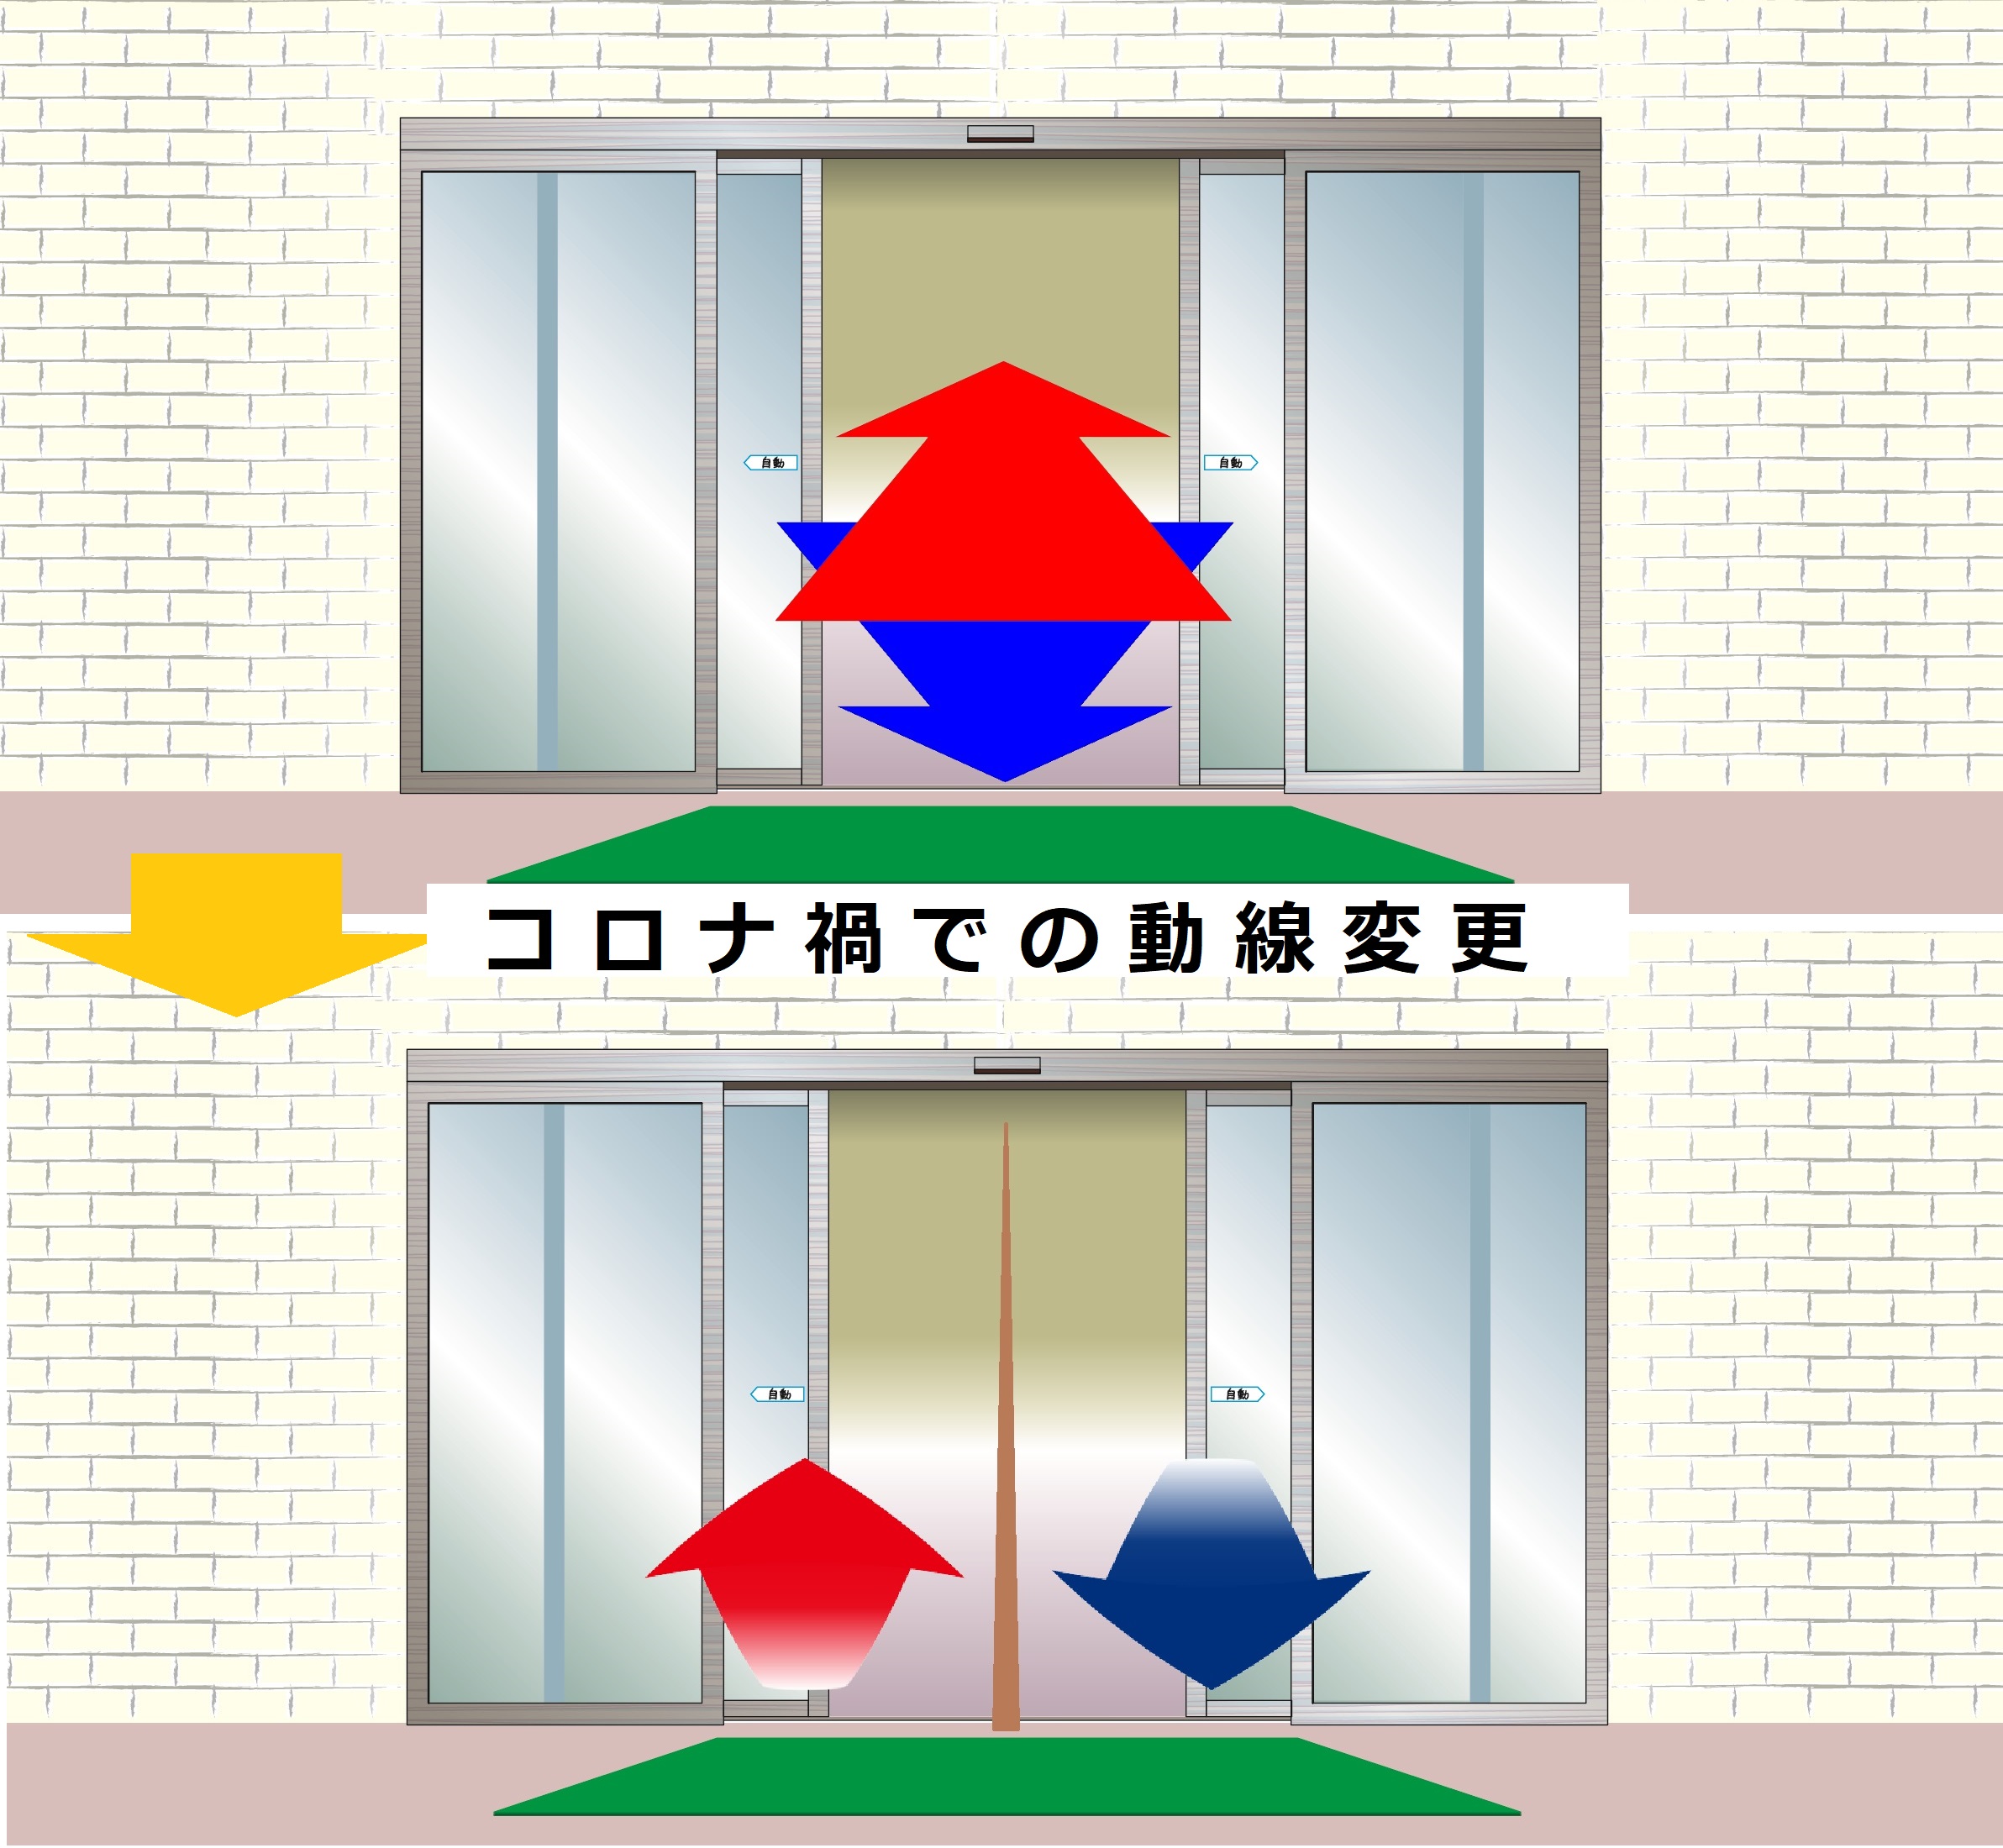 上下に2種類の施設入口のイラスト。上は行き戻りの区別なし、下は行きと戻りが区別されている。